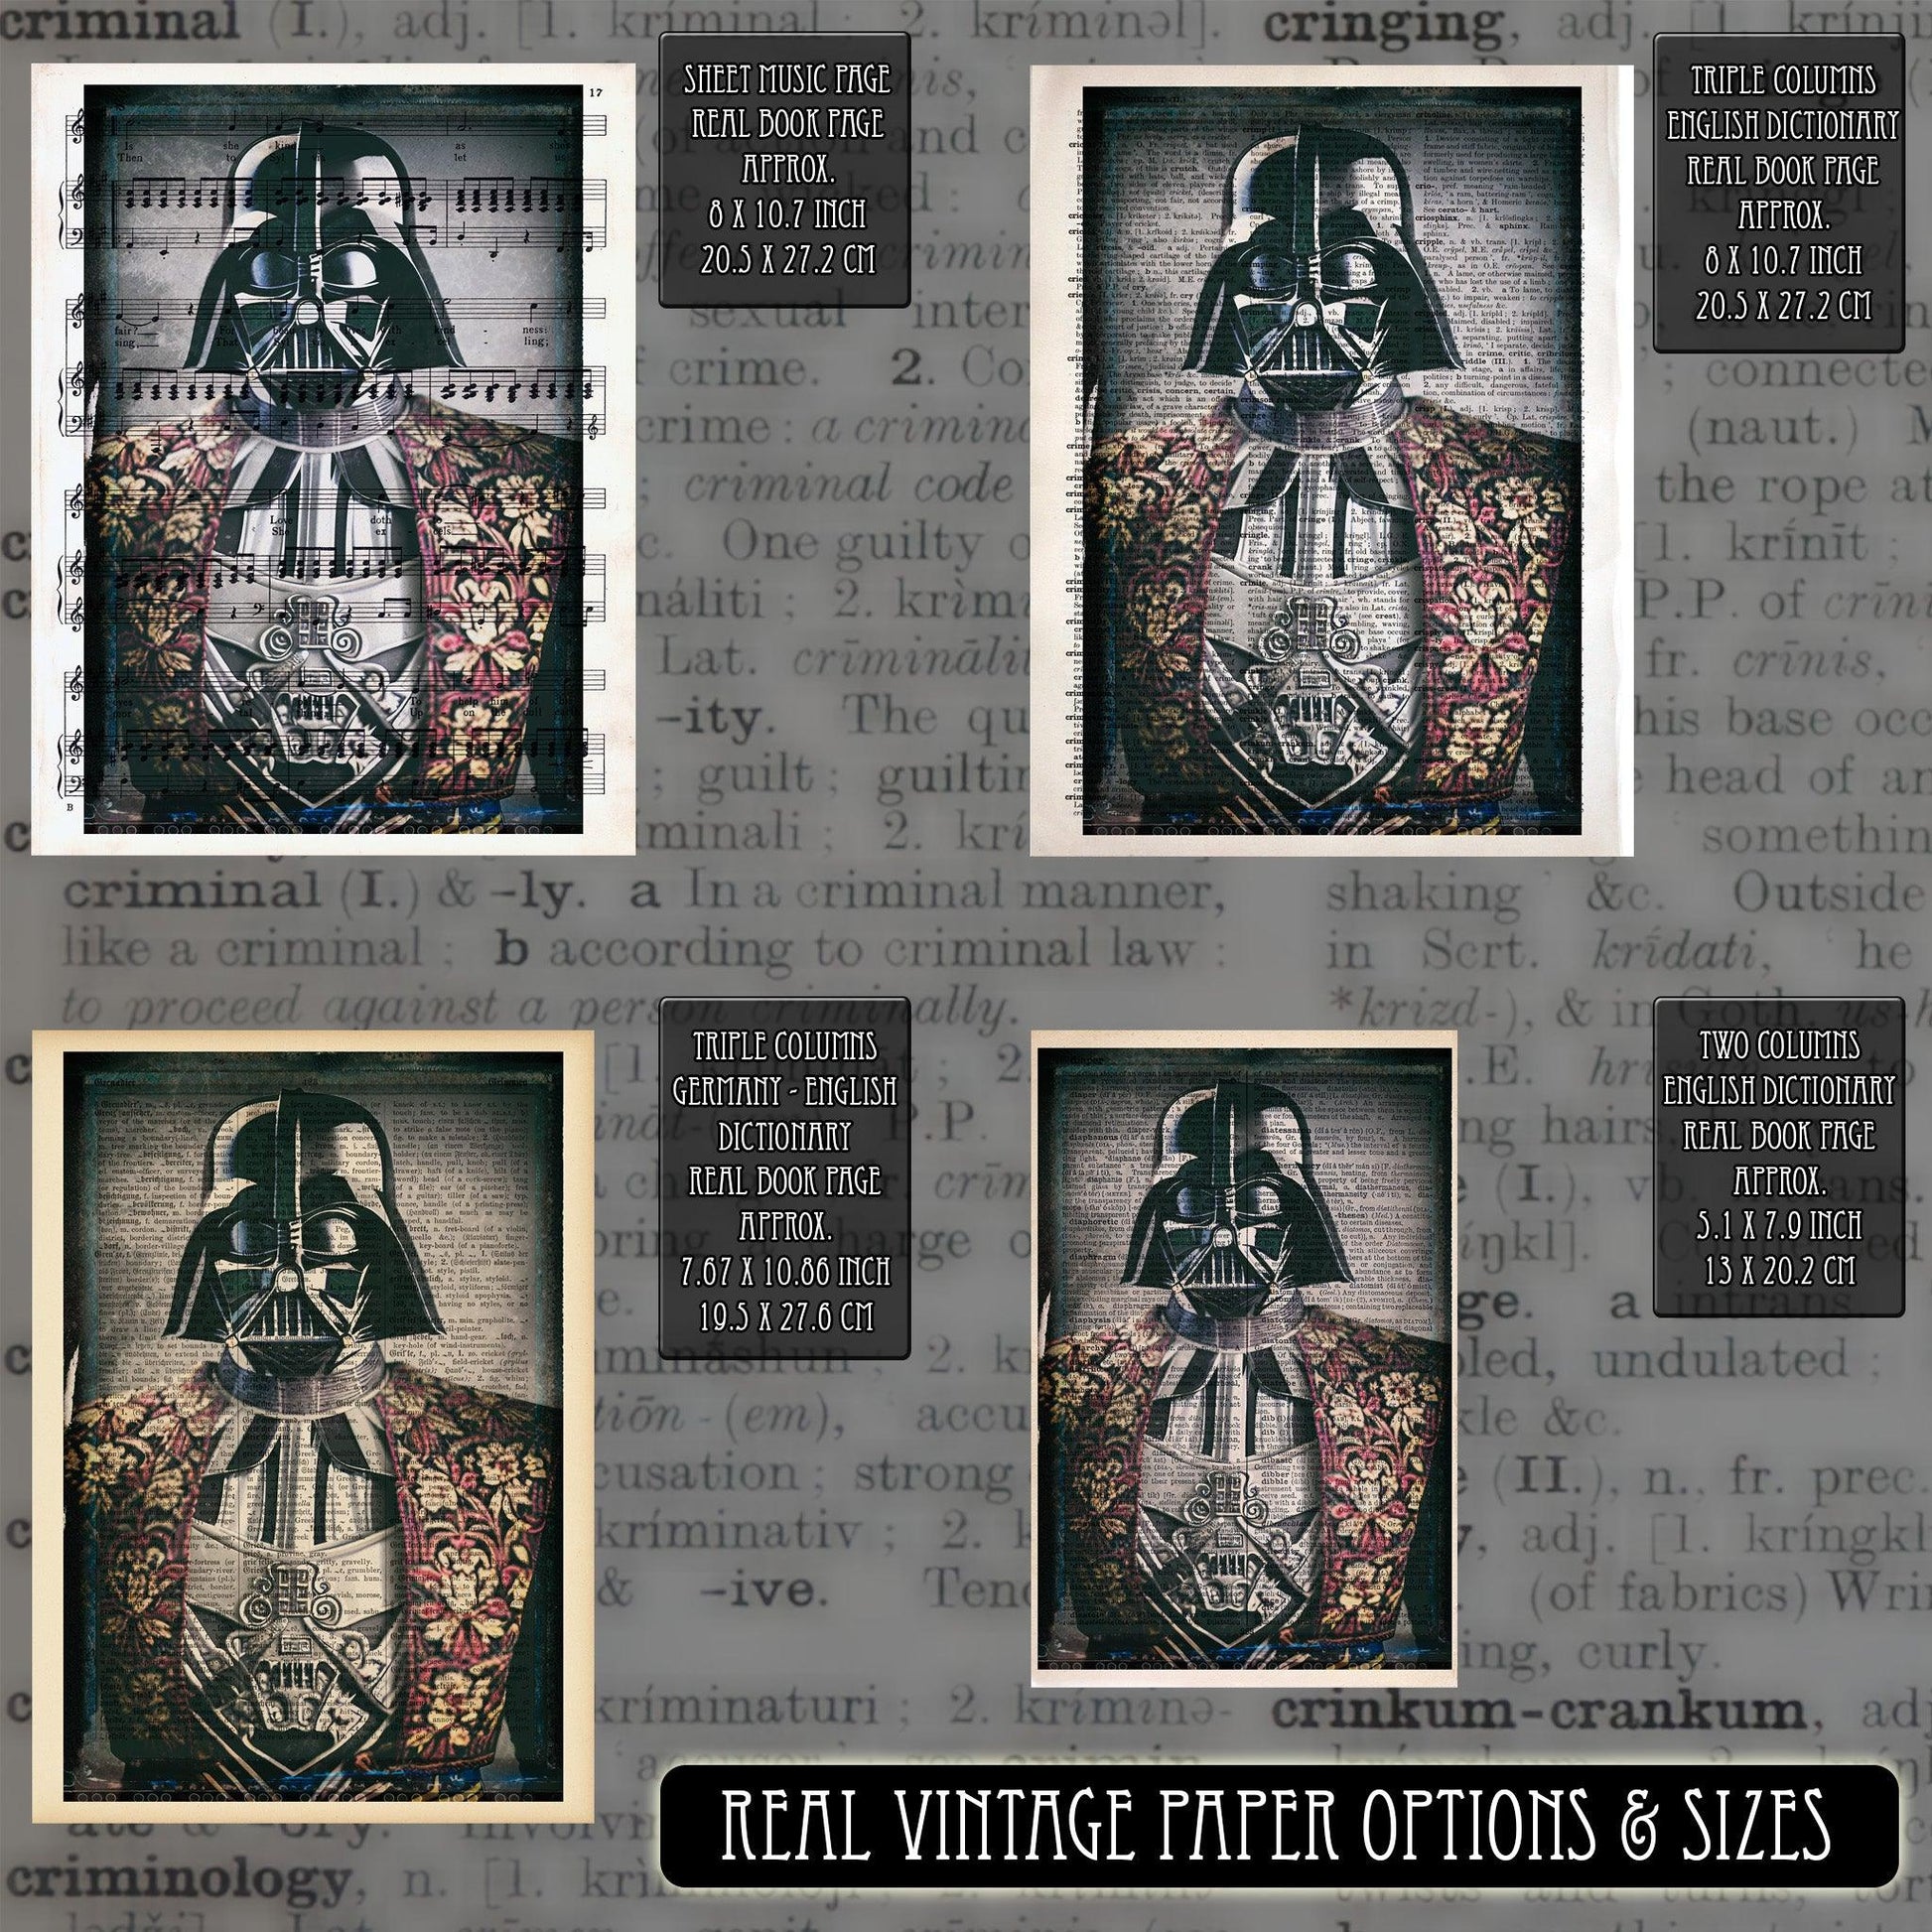 Victorian Darth Vader - Victorian Gothic Art on Vintage Dictionary Page - ArtCursor